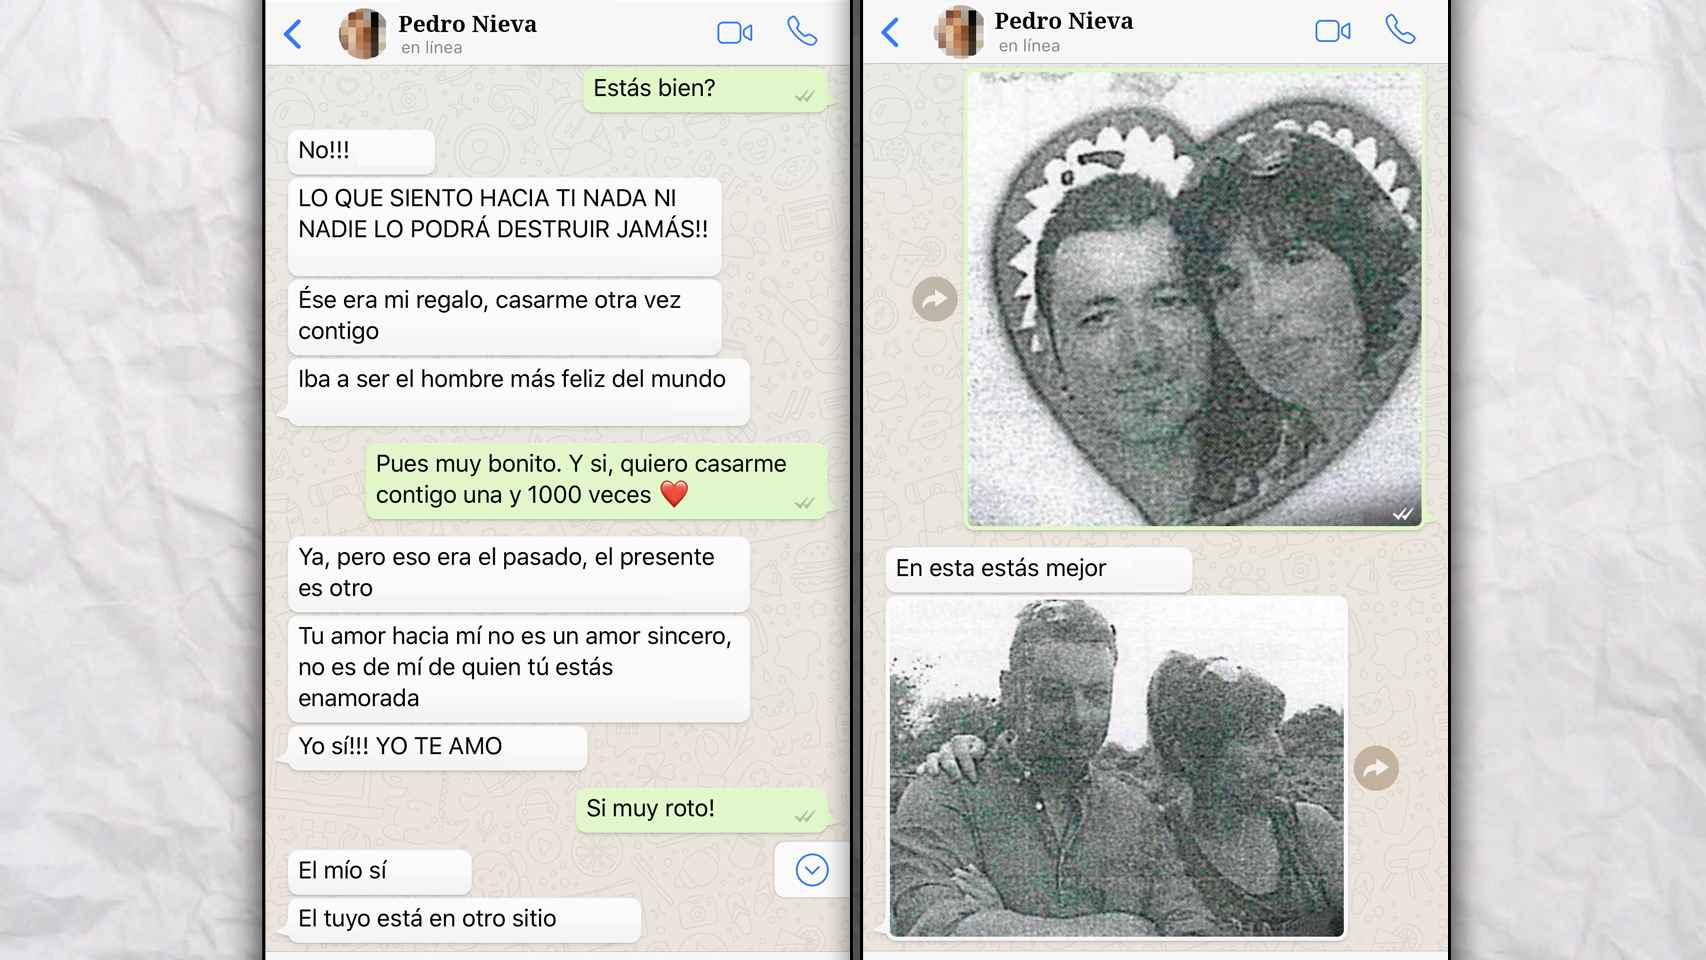 Conversación de Whatsapp recogida en el sumario del caso entre Pedro y Katia.